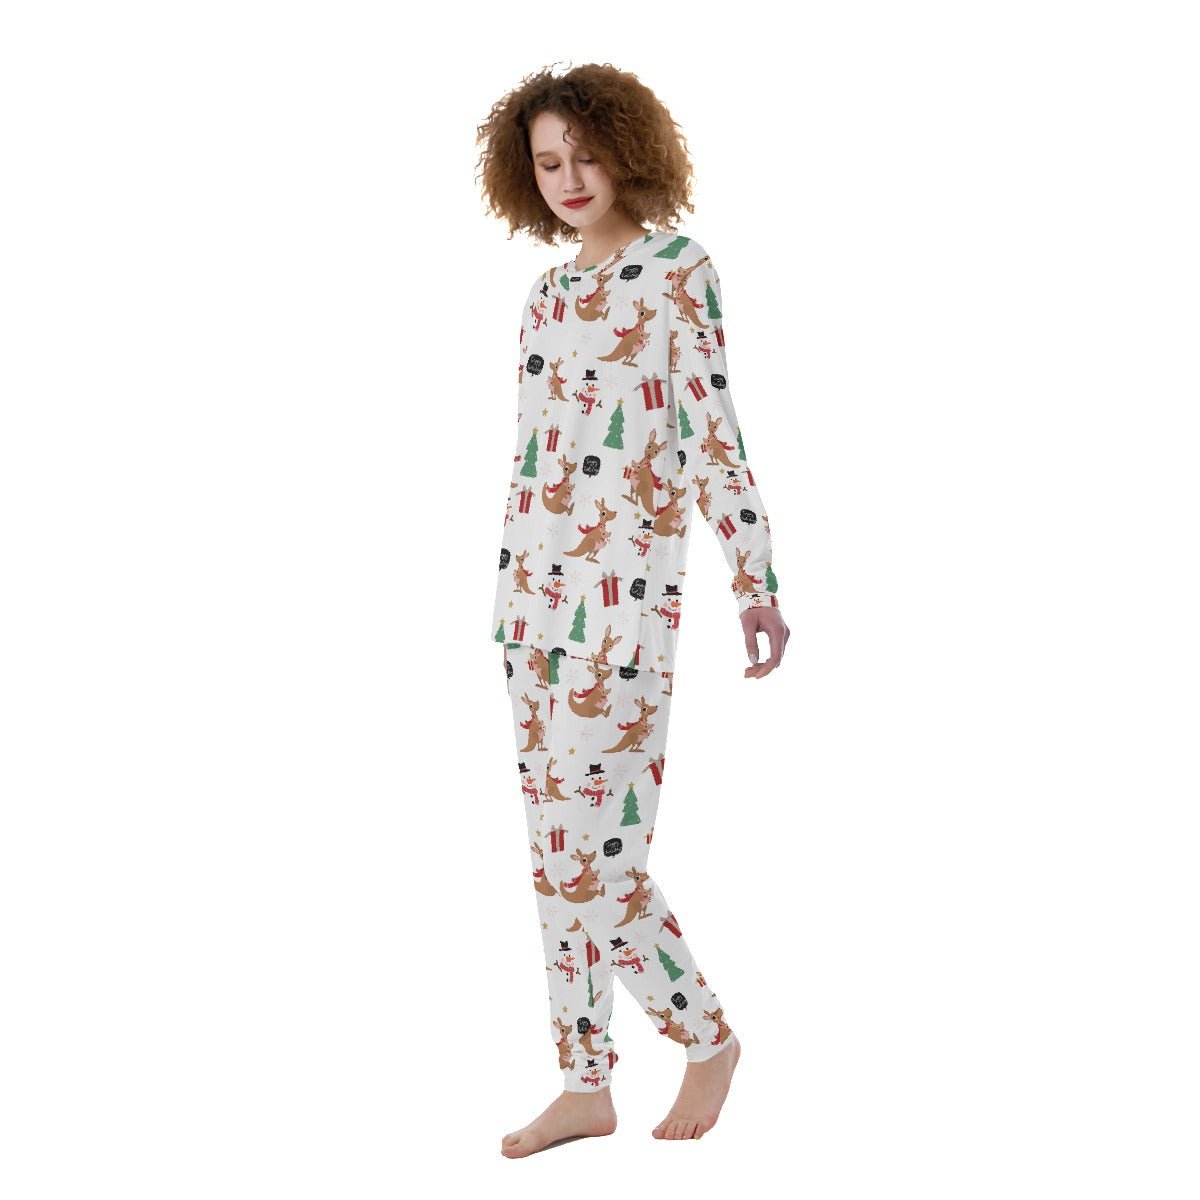 Women's Christmas Pyjamas - Kangaroos - Festive Style